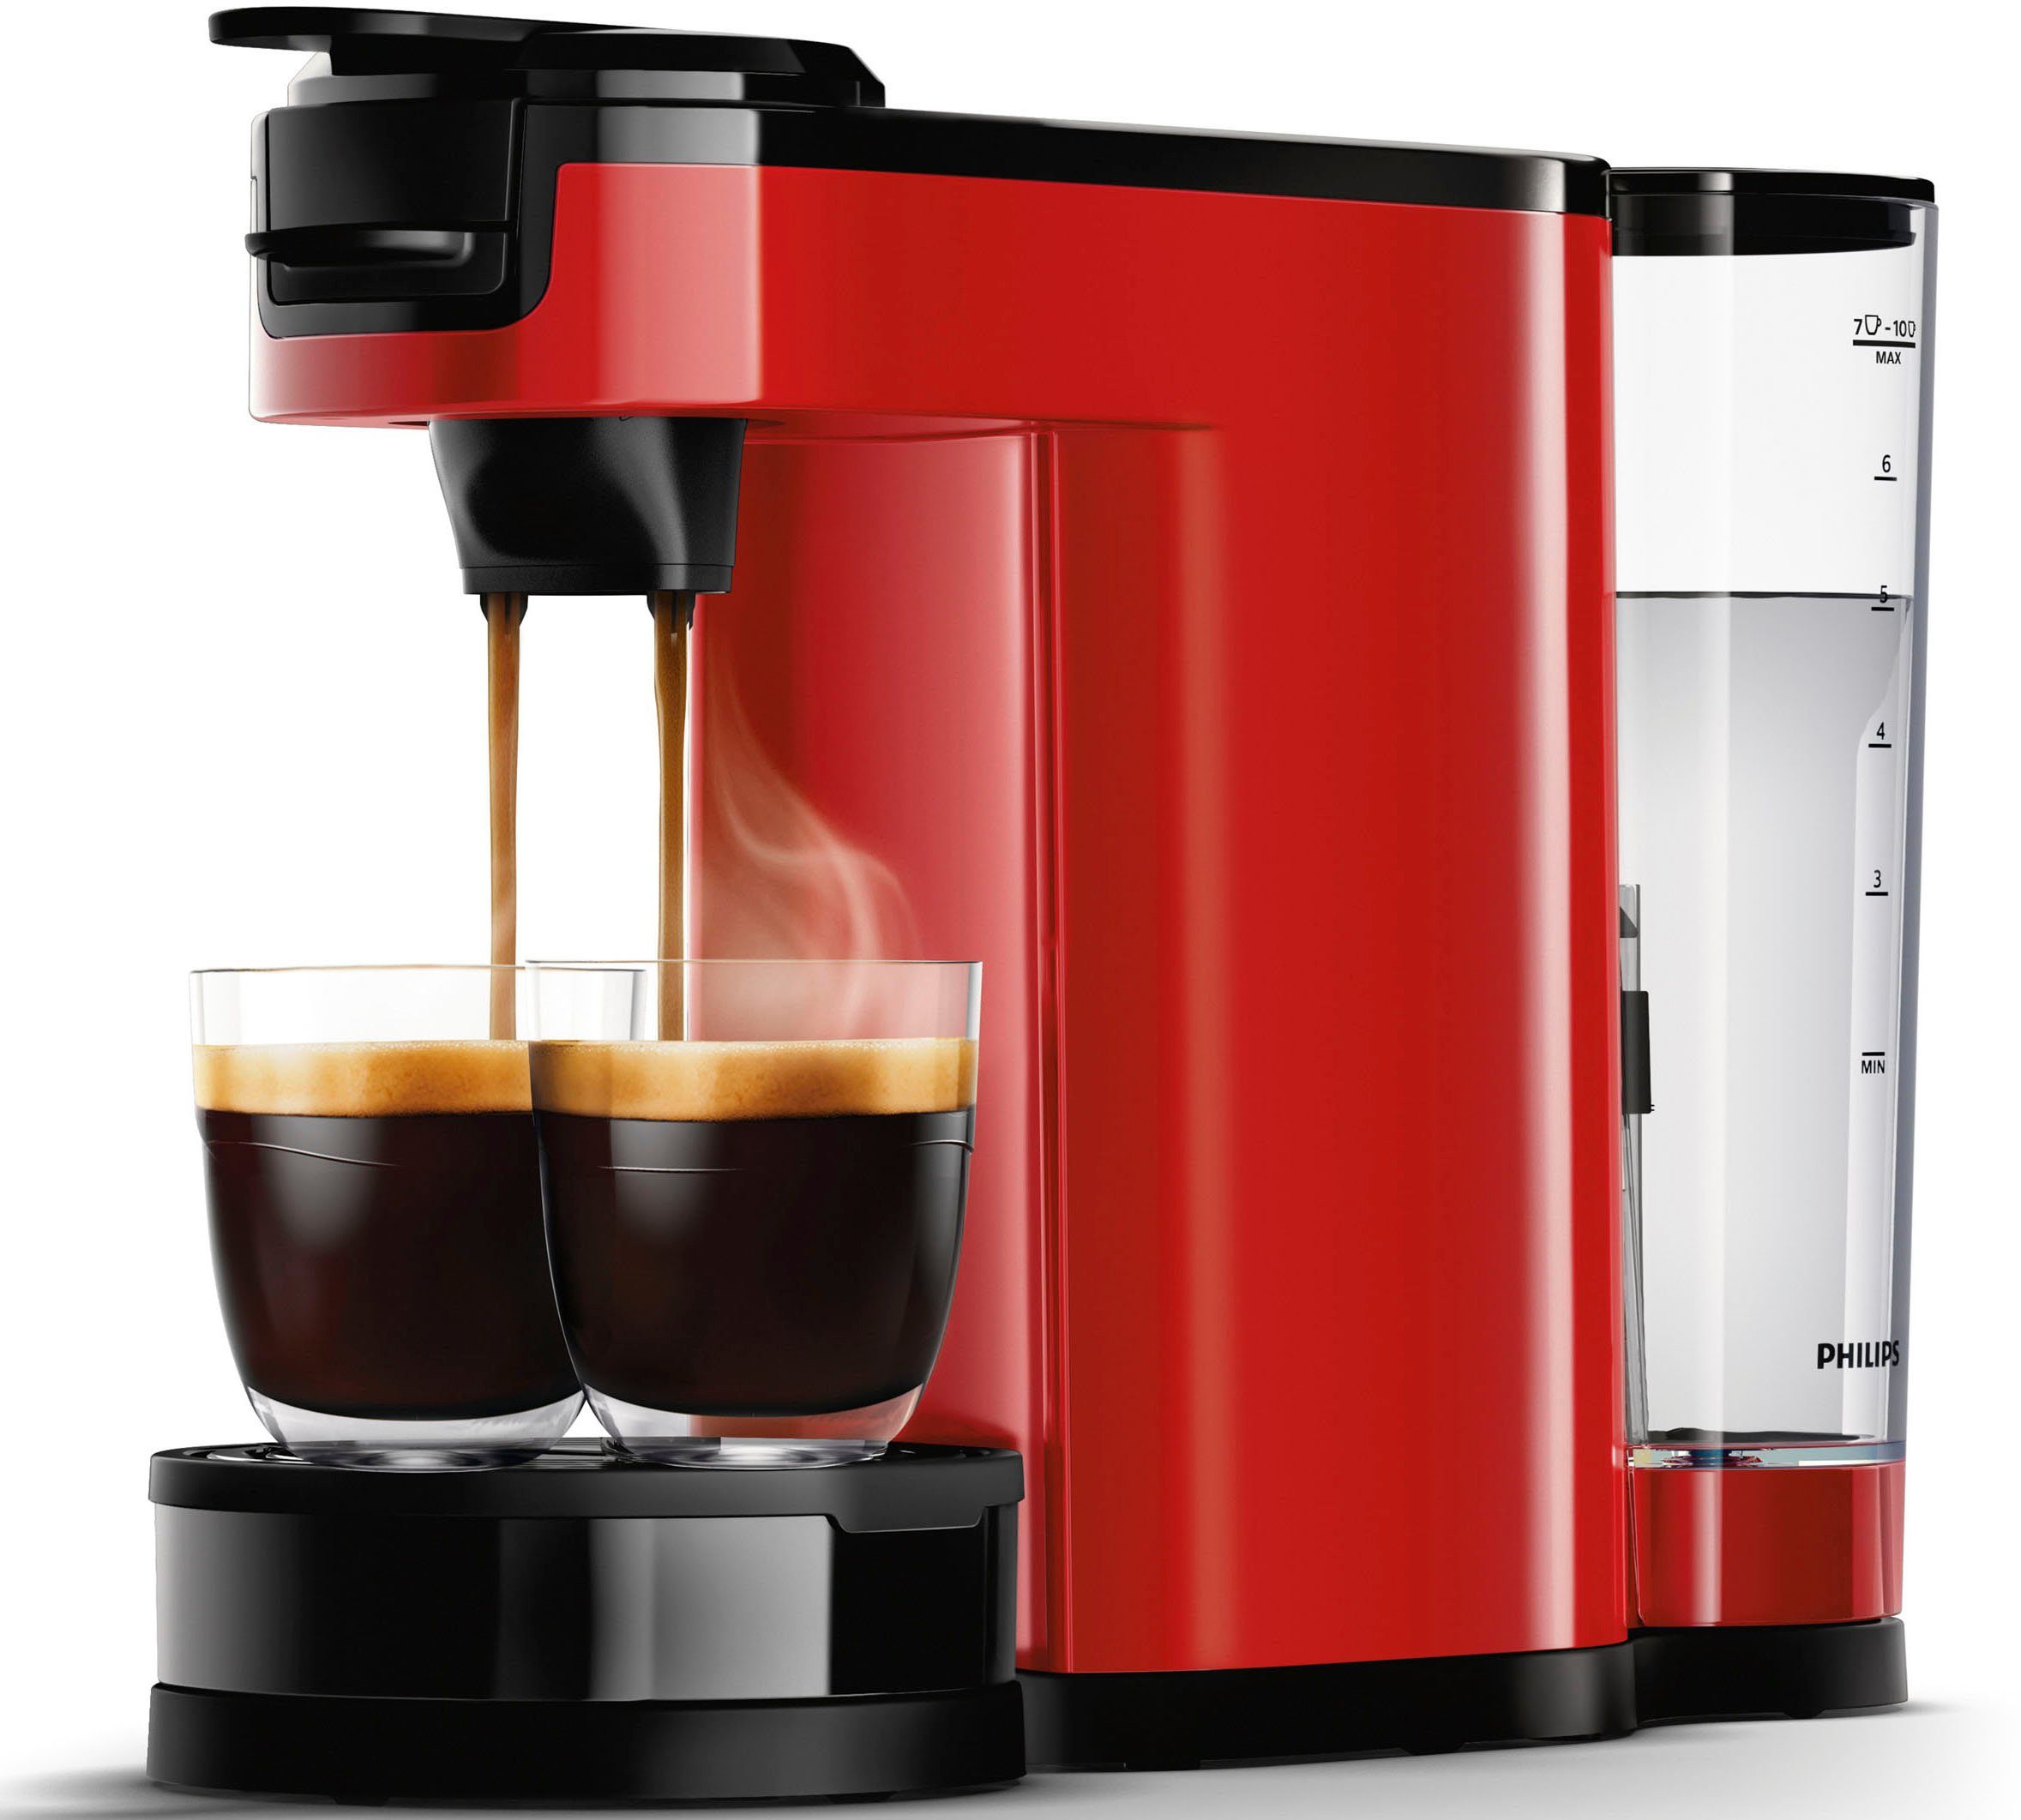 Philips von Kaffeekanne, UVP Wert 9,90 € Kaffeepaddose HD6592/84, im inkl. Senseo Kaffeepadmaschine 1l Switch